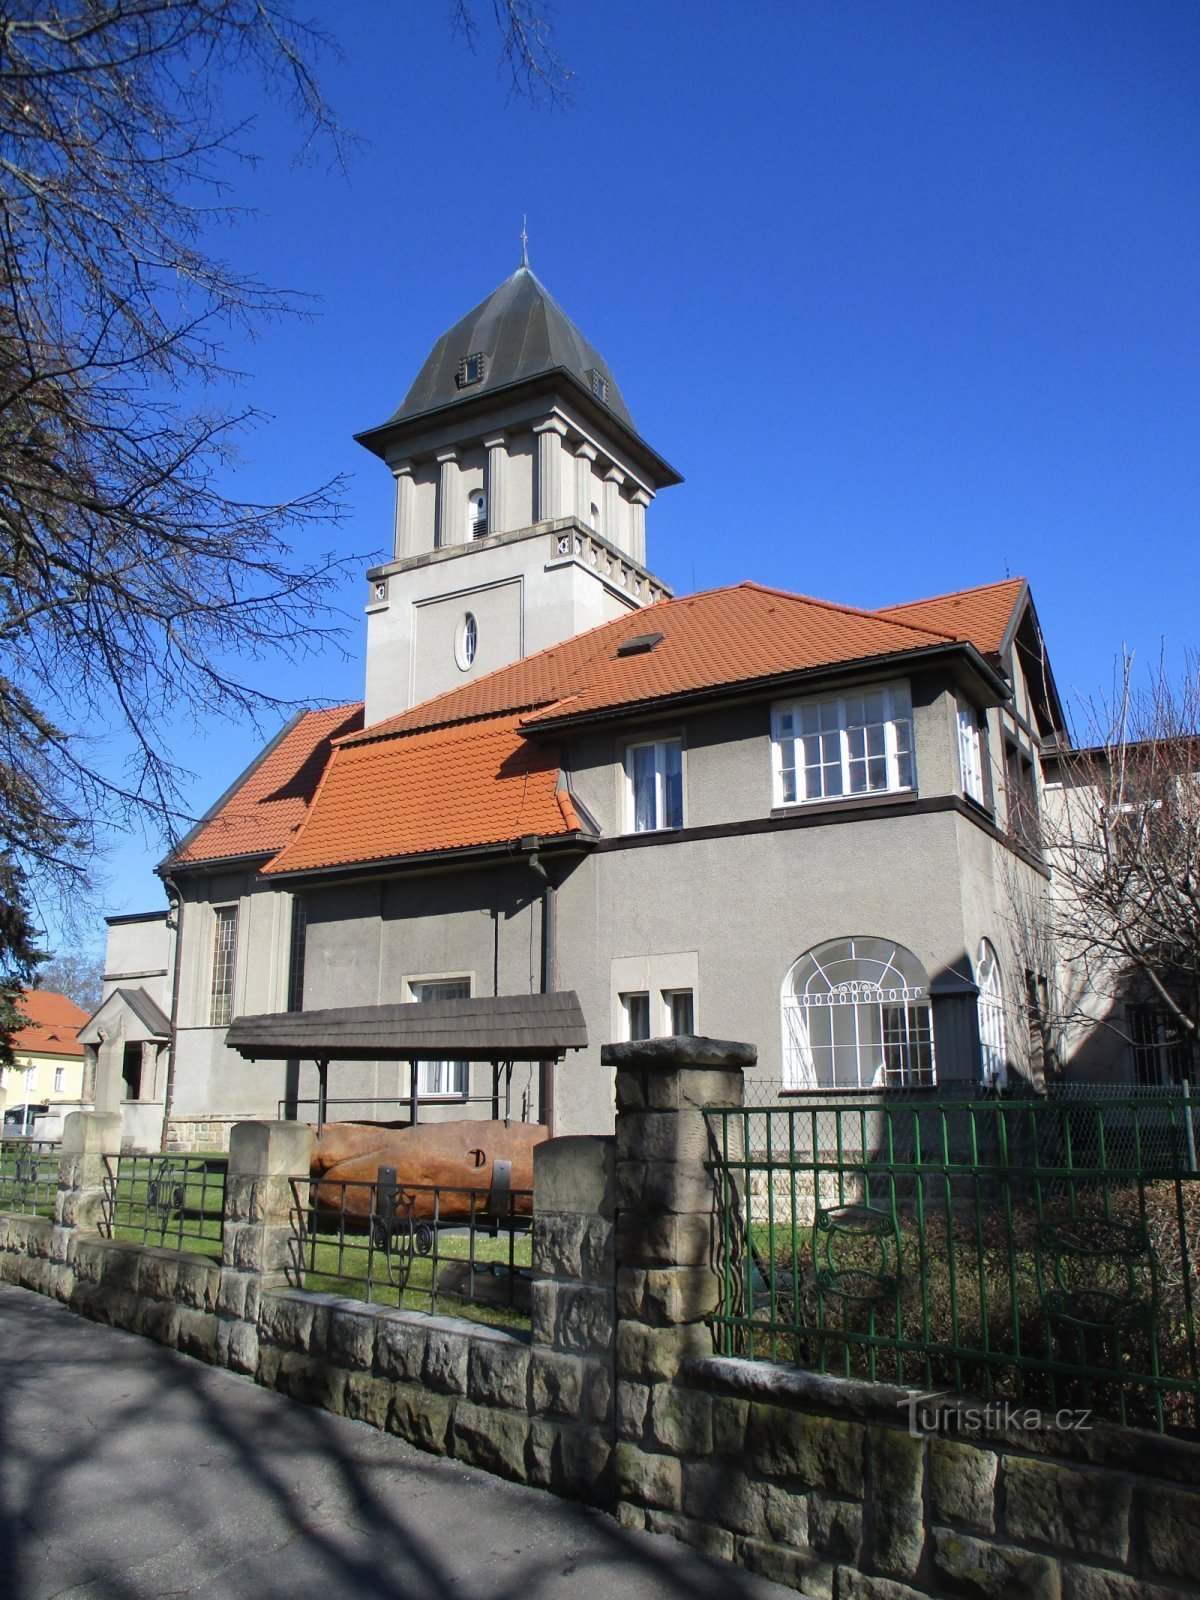 Nhà thờ truyền giáo với nhà xứ (Hradec Králové, 19.3.2020/XNUMX/XNUMX)